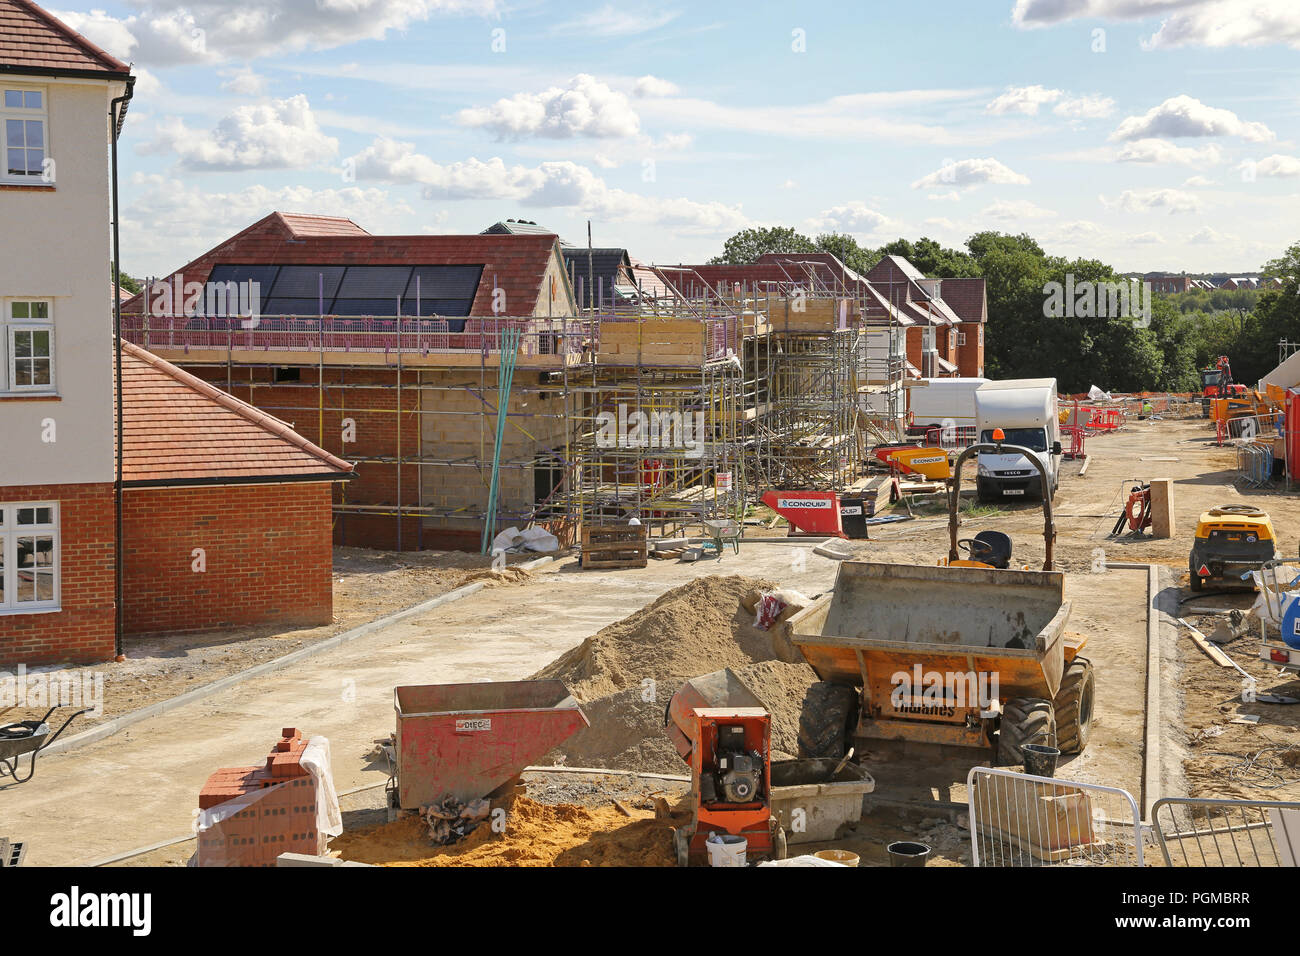 Les nouvelles maisons en construction dans le quartier de Castle Hill Ebbsfleet Garden City, au sud-est de Londres, au Royaume-Uni. Une importante nouvelle initiative en matière de logement du gouvernement Banque D'Images